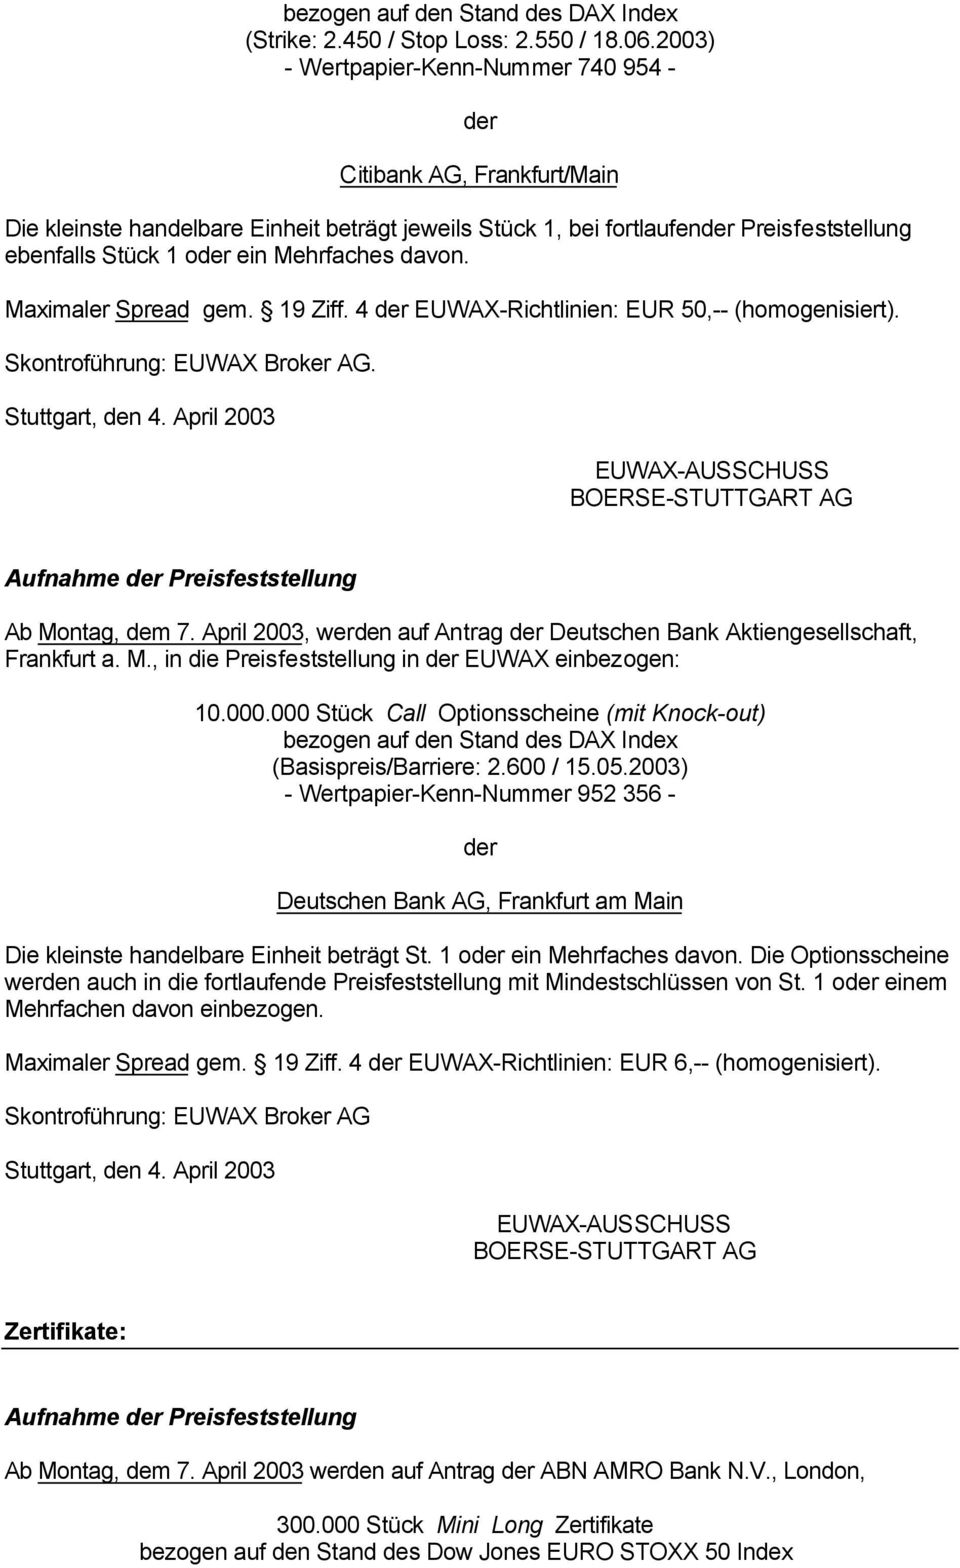 Maximaler Spread gem. 19 Ziff. 4 EUWAX-Richtlinien: EUR 50,-- (homogenisiert). Skontroführung: EUWAX Broker AG. Aufnahme Preisfeststellung Ab Montag, dem 7.